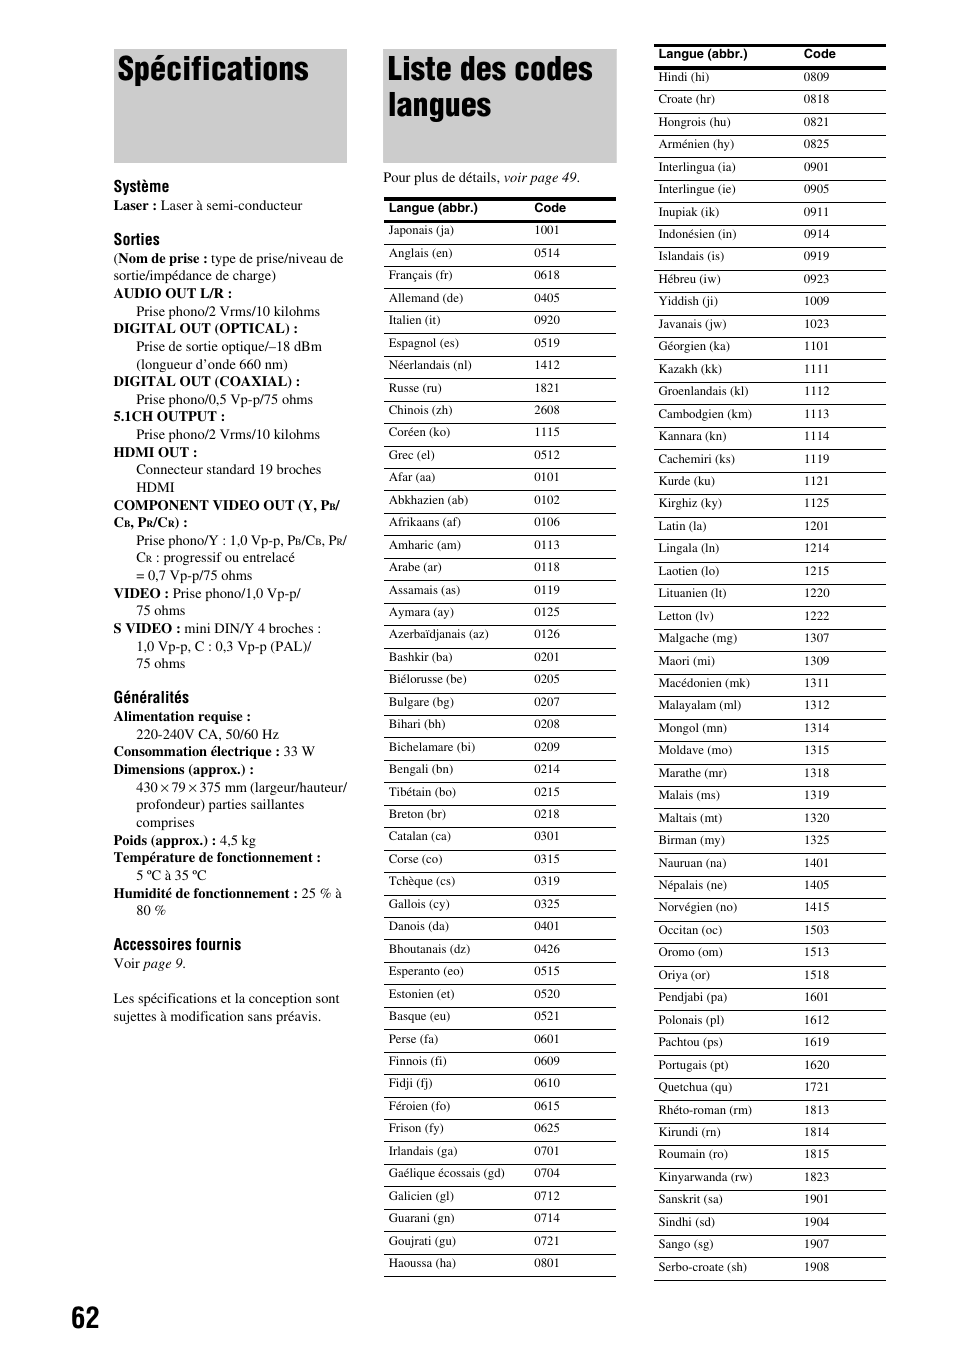 Spécifications, Liste des codes langues | Sony BDP-S300 Manuel d'utilisation | Page 62 / 67